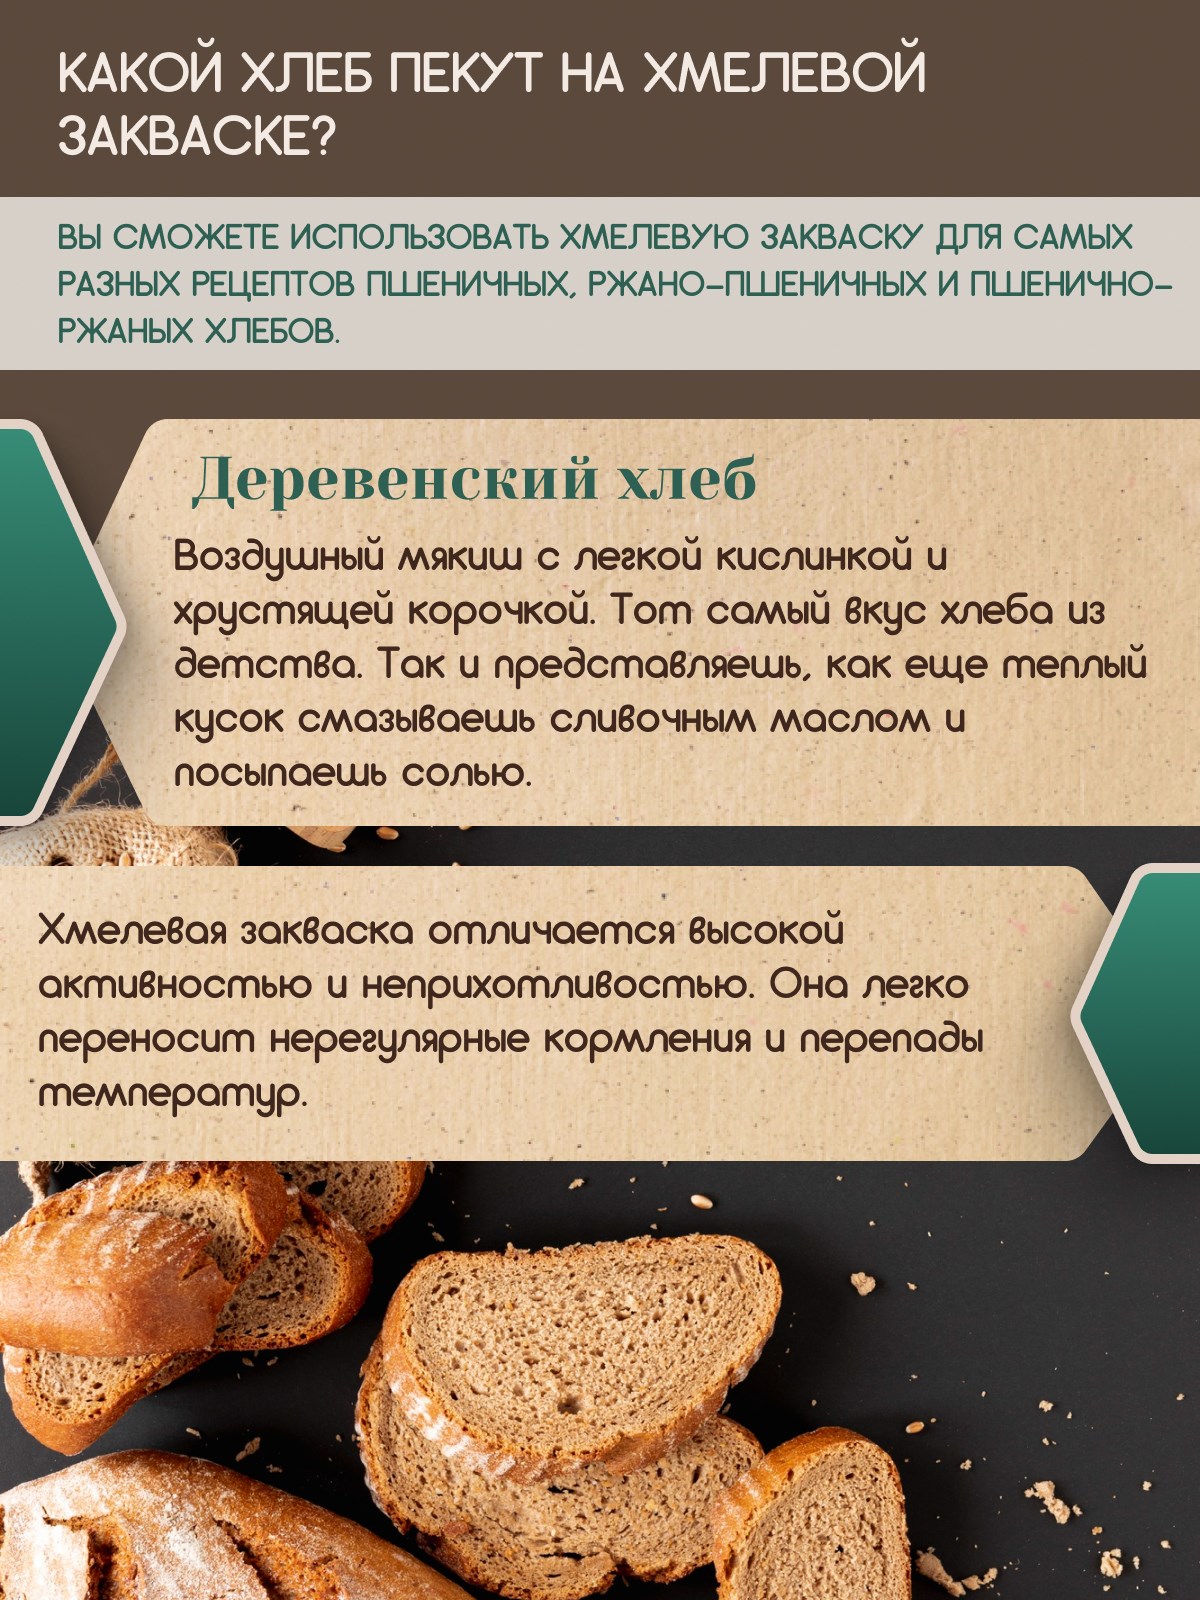 ТанинХлеб: о закваске и заквасочном хлебе. | VK